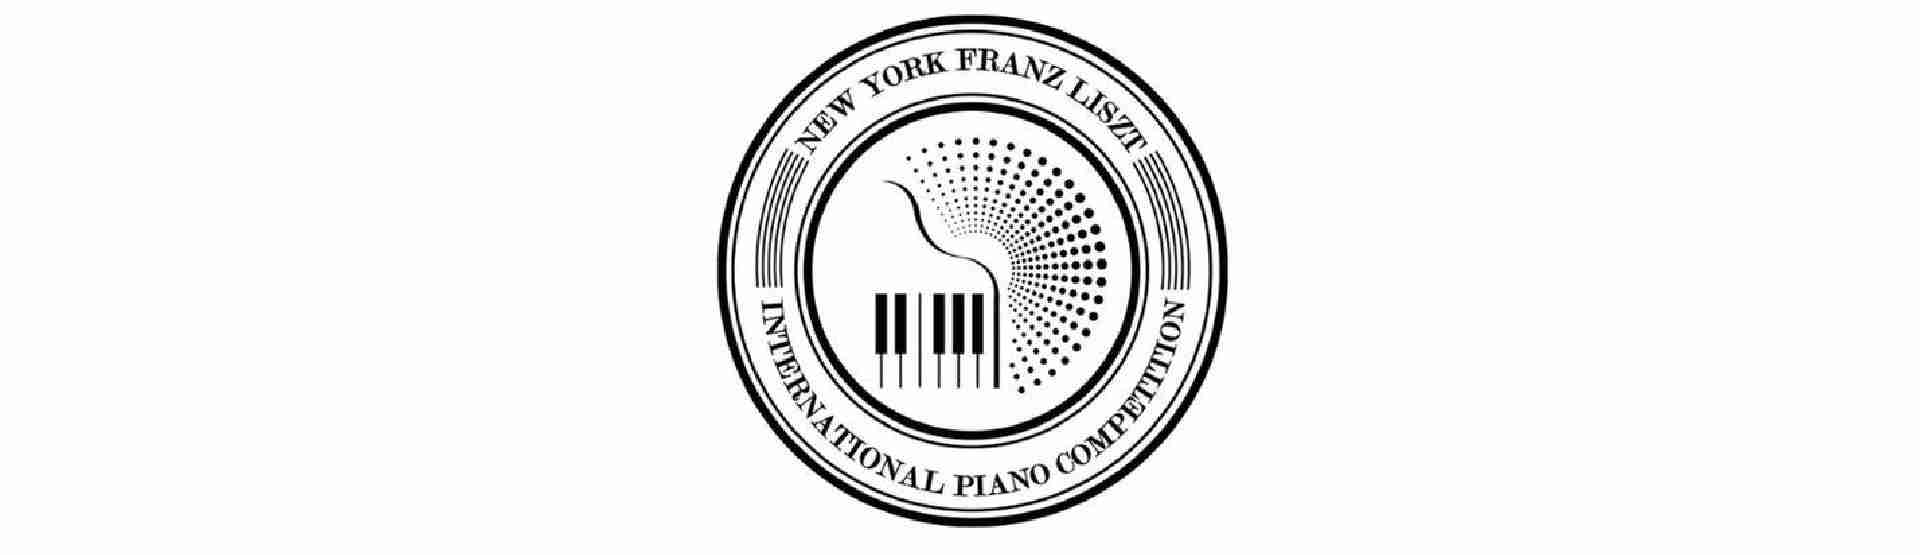 II. New York-i Liszt Ferenc Zongoraverseny